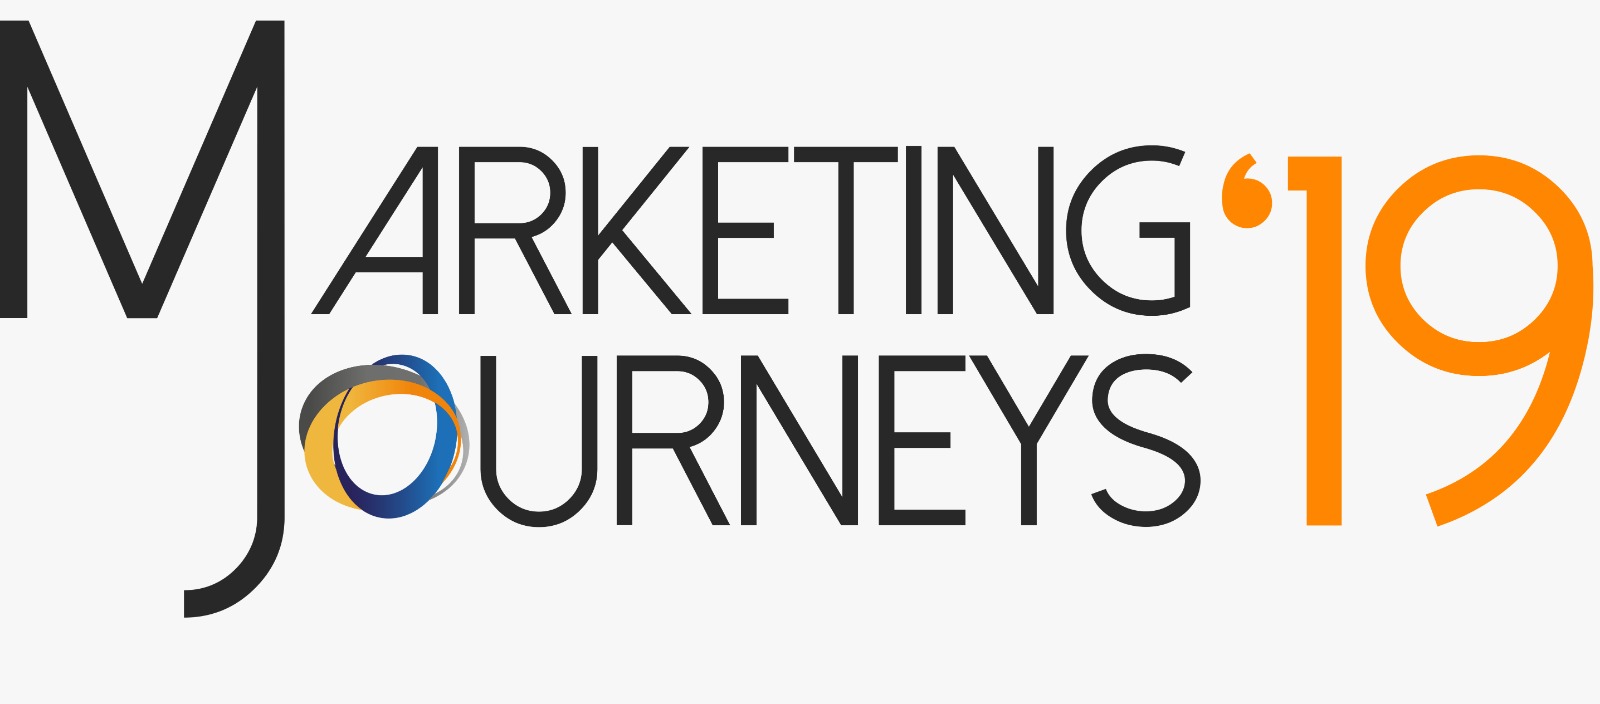 Marketing Journeys, dos maiores eventos do meio realizado por alunos